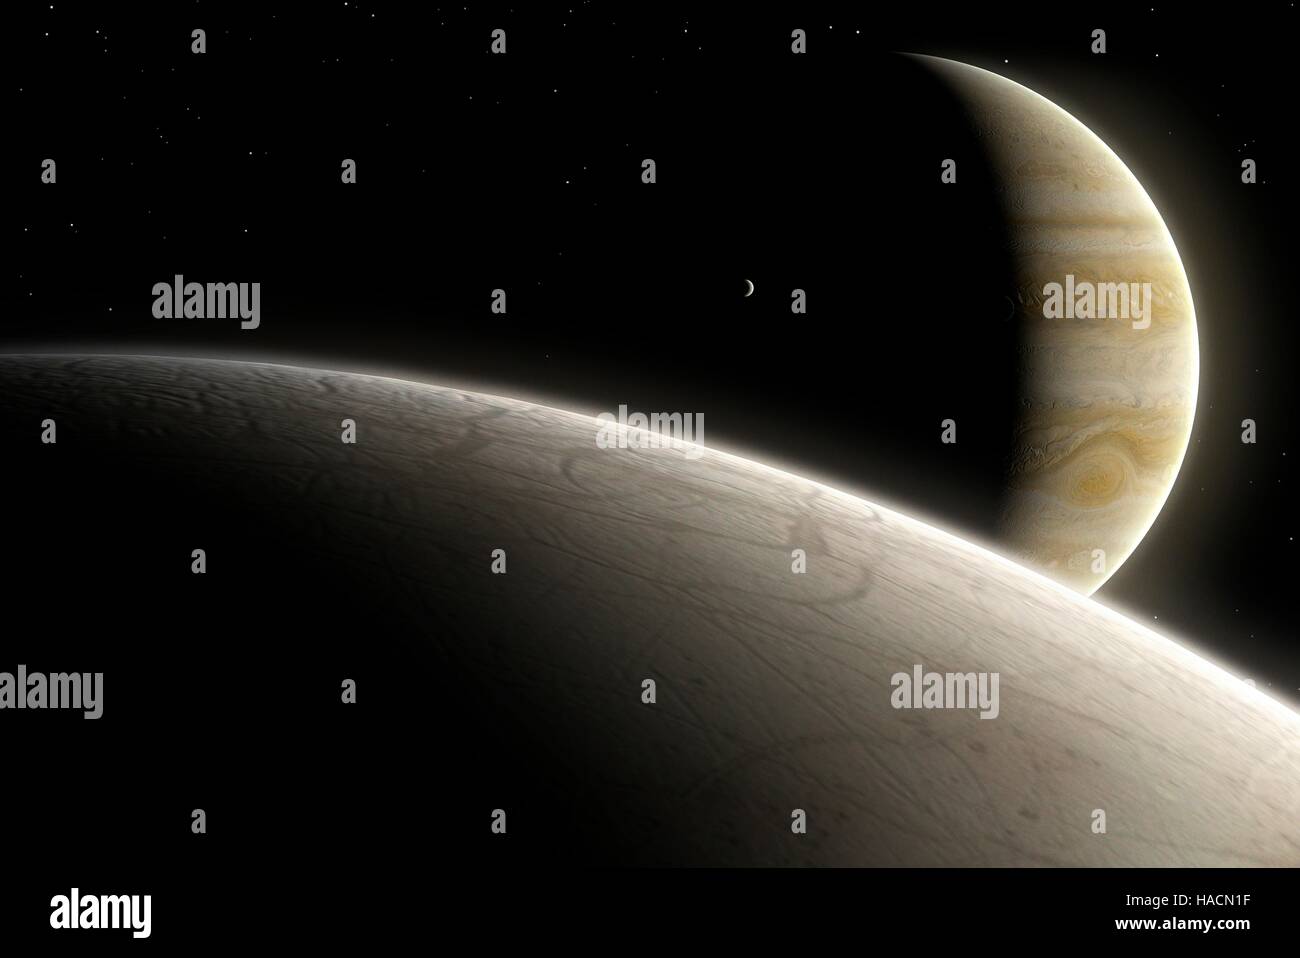 Europa est la plus petite des quatre lunes galiléennes de Jupiter, et le deuxième plus proche de la planète. Sa surface est relativement lisse et glacée. Répercussions sur les météorites causer la fonte de la surface, permettant à l'eau pour lisser avant de geler. Il existe une preuve de grande échelle de la glace, peut-être appuyée par un manteau liquide et conduit par des procédés thermiques à l'intérieur de la lune. Io est également considérée, contre le côté nocturne de Kupiter. Banque D'Images